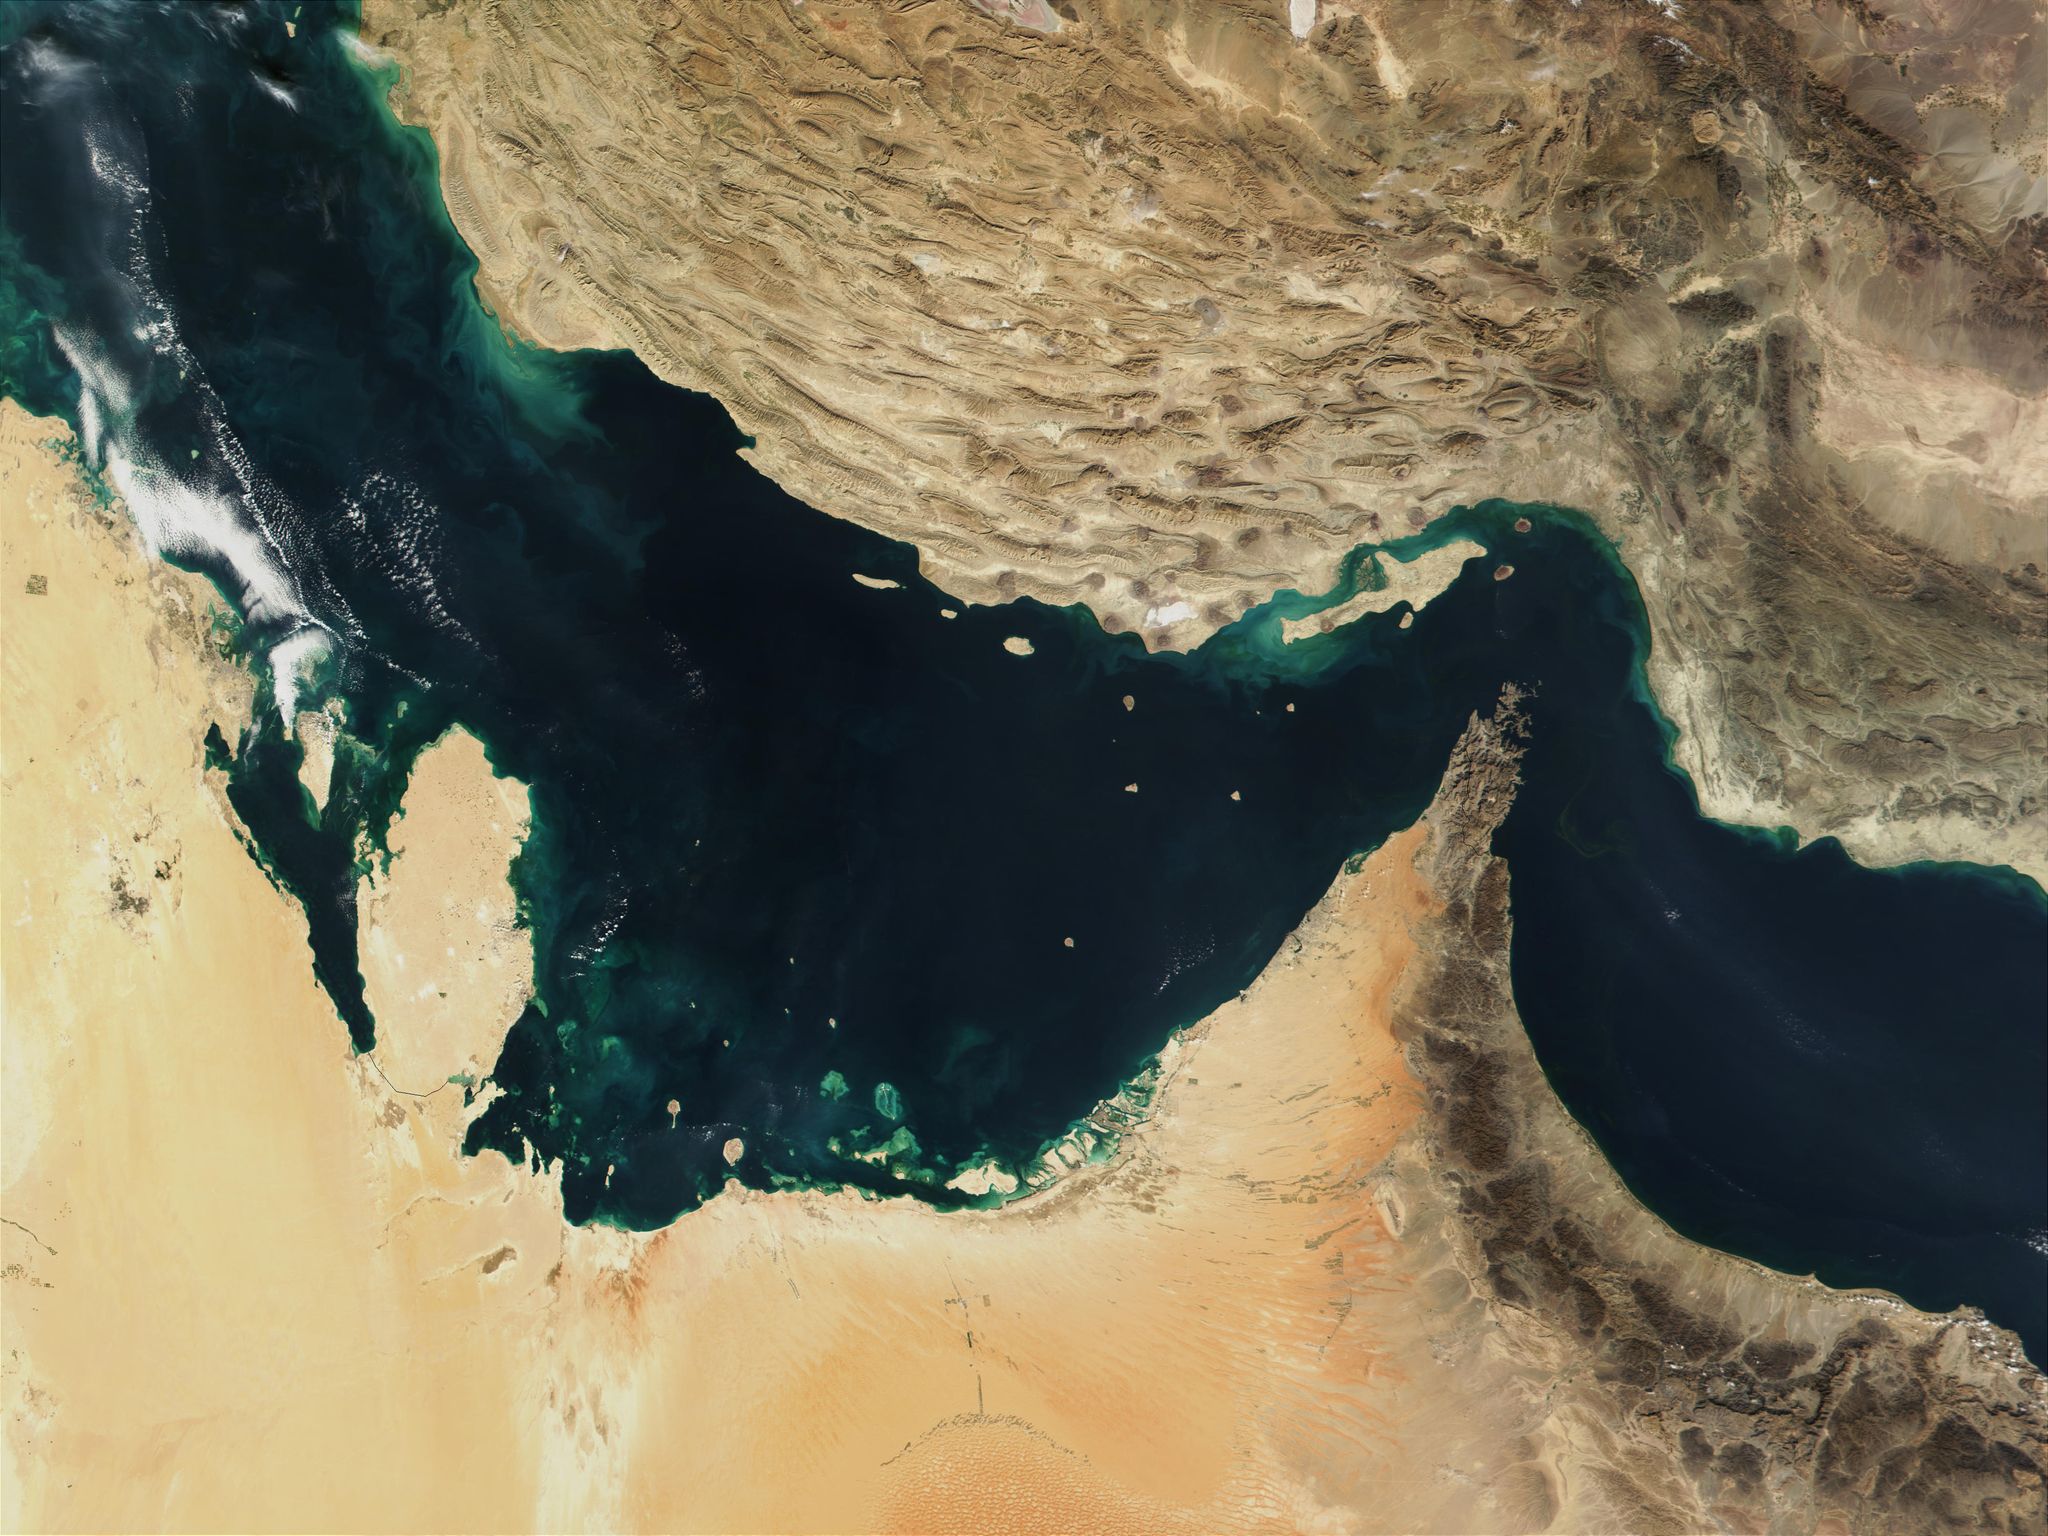 Europäische Kriegsschiffe sollen auch in der Straße von Hormus sowie im Persischen Golf und im Golf von Oman zur Begleitung von Handelsschiffen eingesetzt werden können.